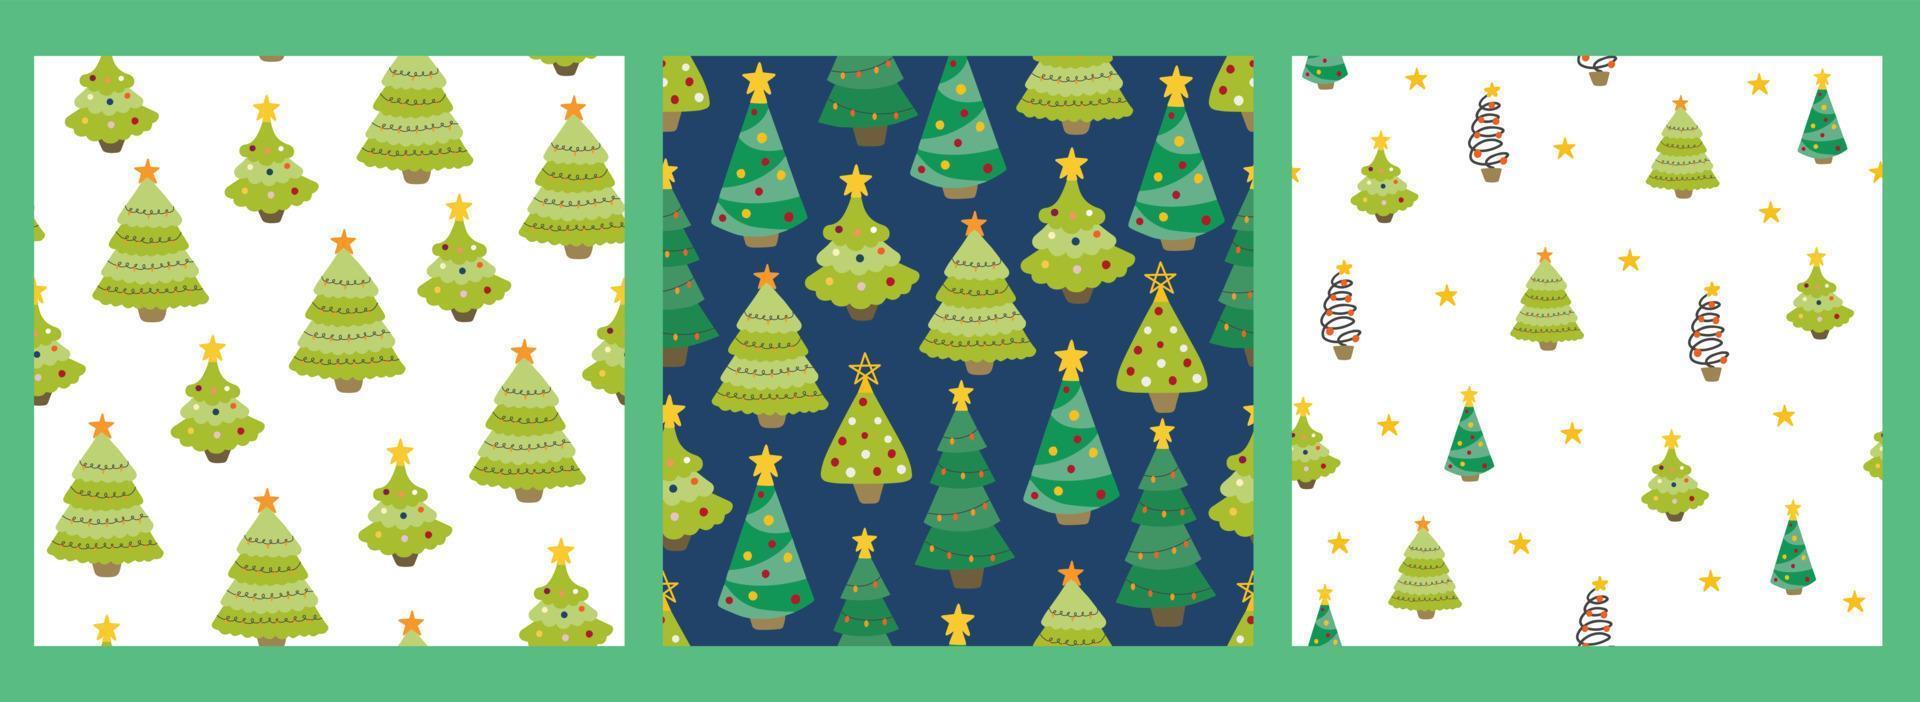 set van naadloze patroon met handgetekende kerstbomen. kleurrijke vectorachtergrond. decoratief behang, zeer geschikt voor het bedrukken van textiel, stof, behang, cadeaupapier. vector